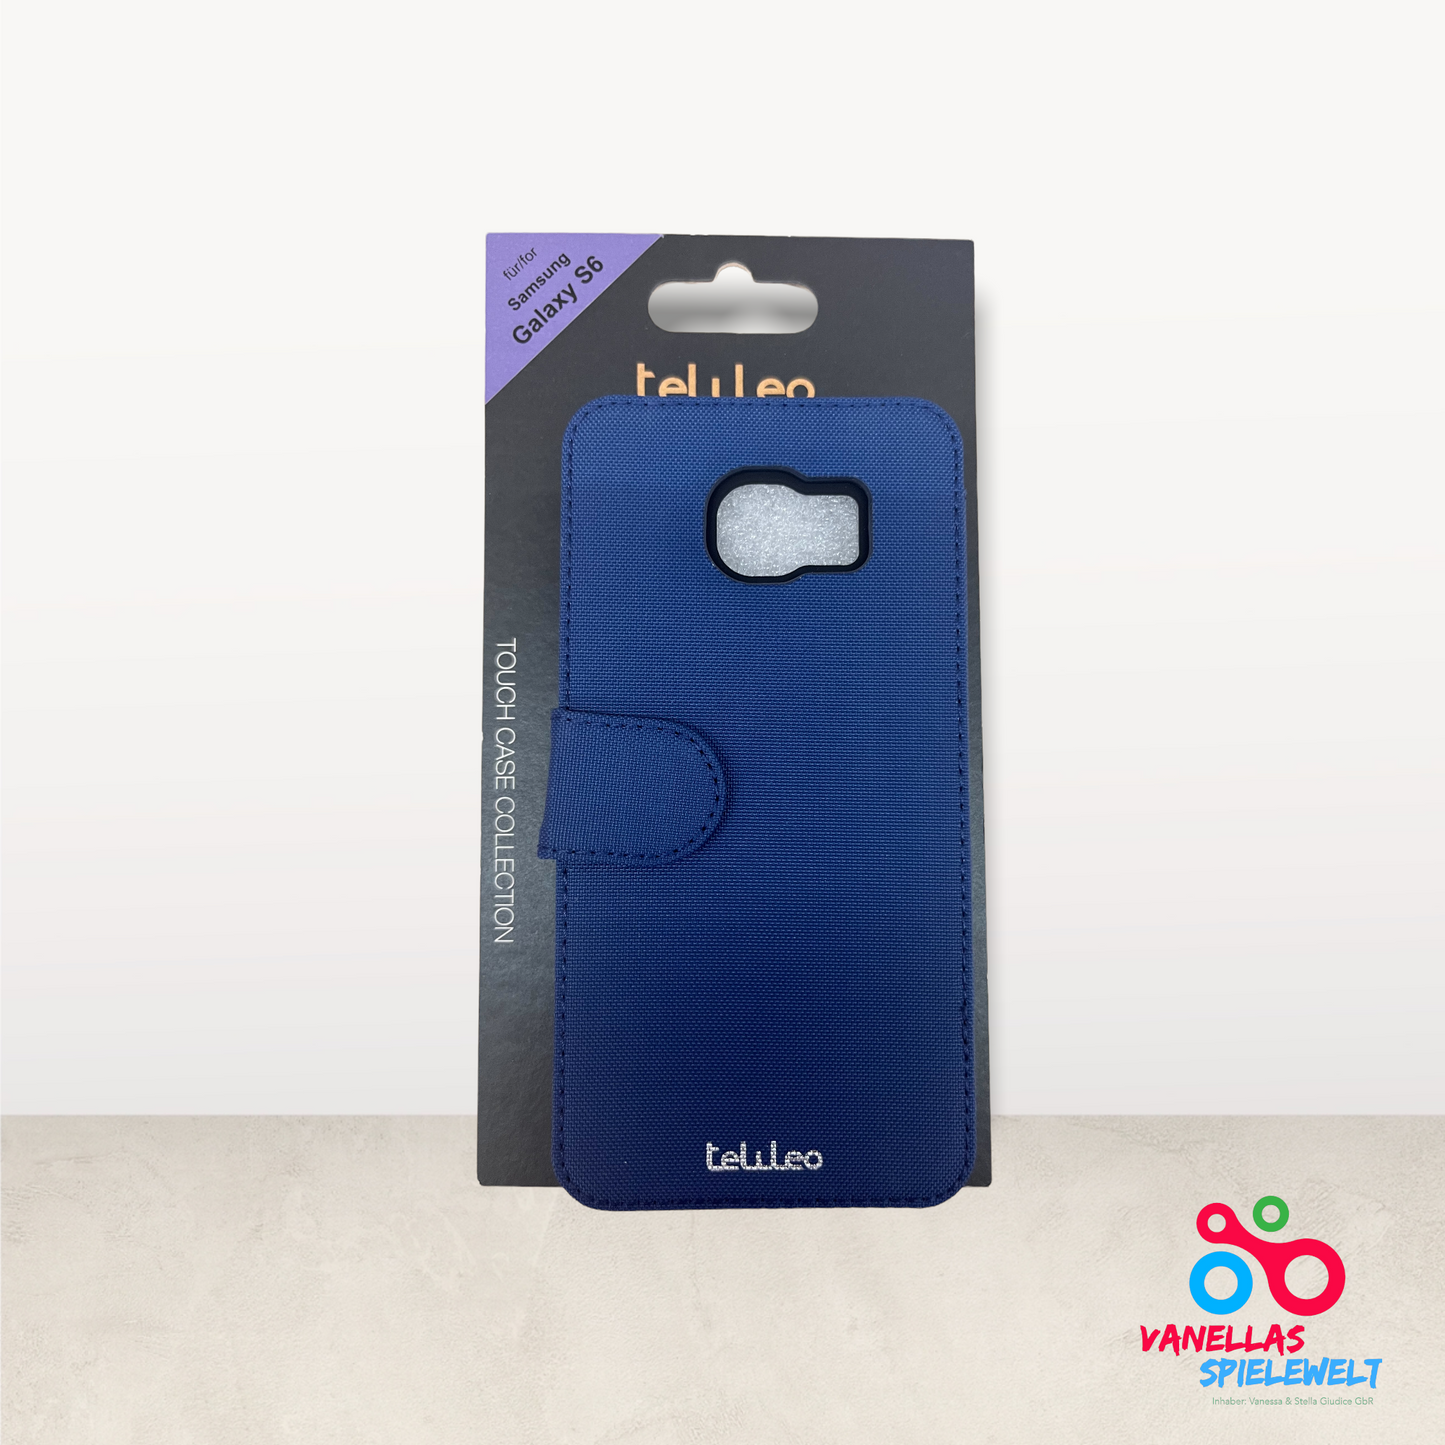 Touch Cases Nylon Edition für Samsung Galaxy S6 blau Vanellas Spielewelt